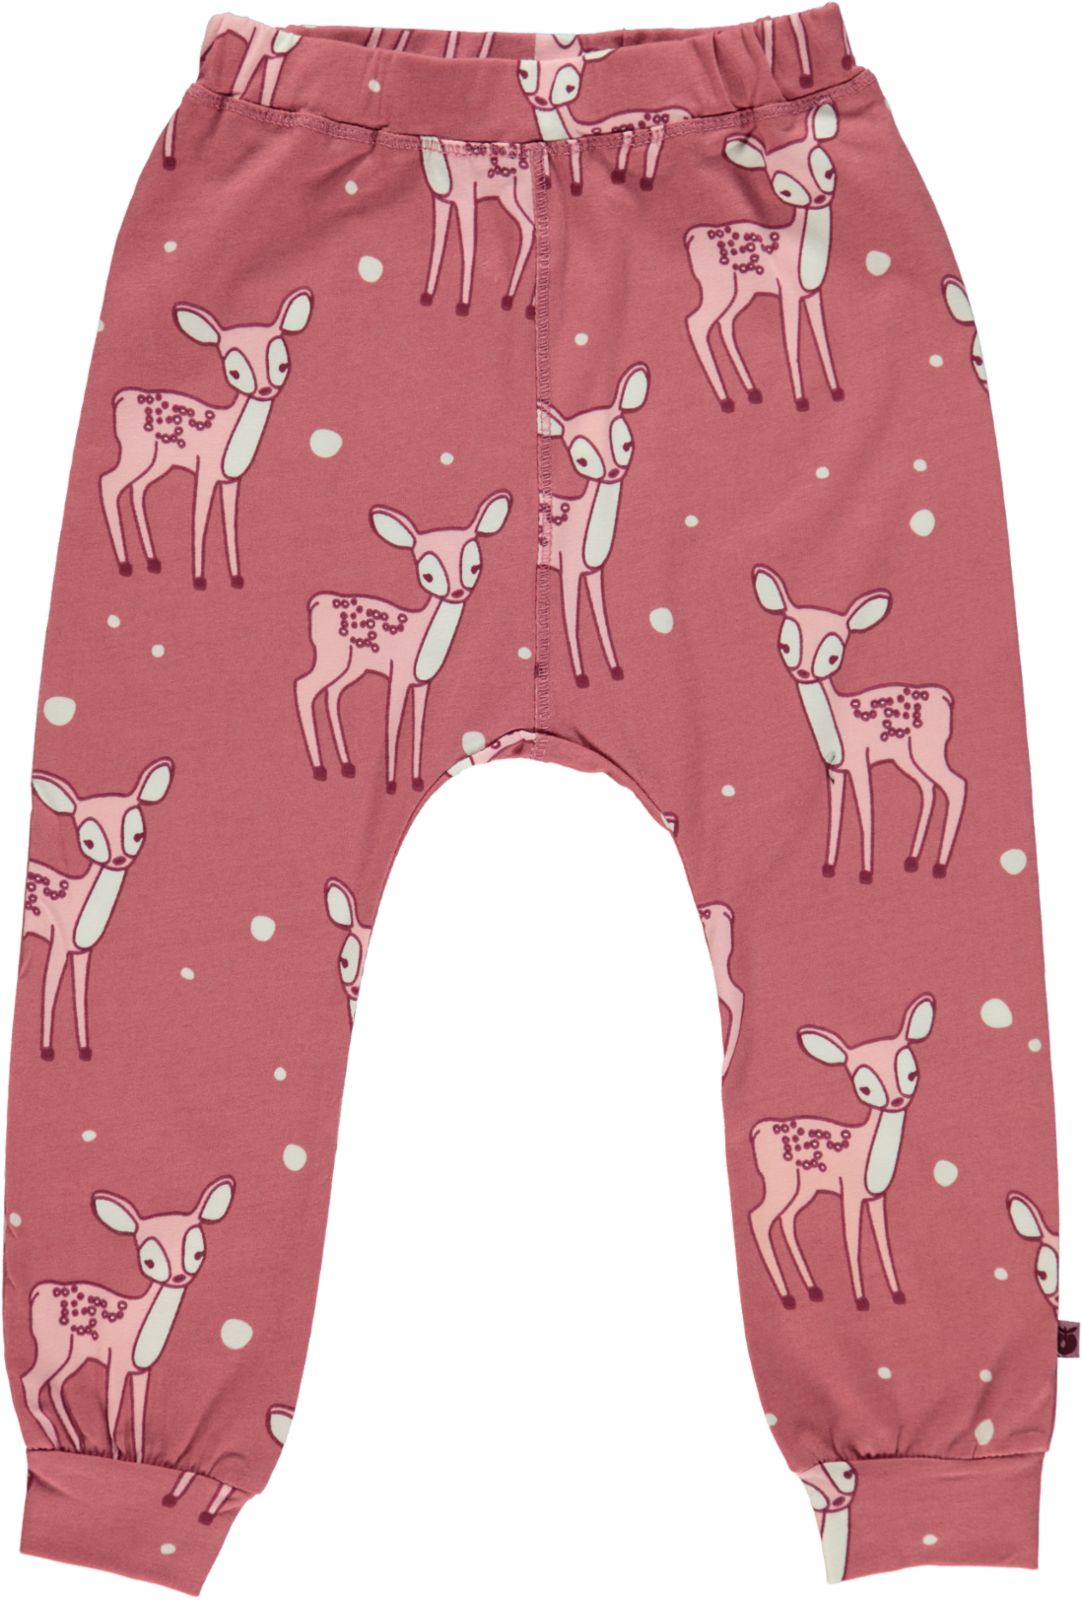 Pants. Deer. E.24